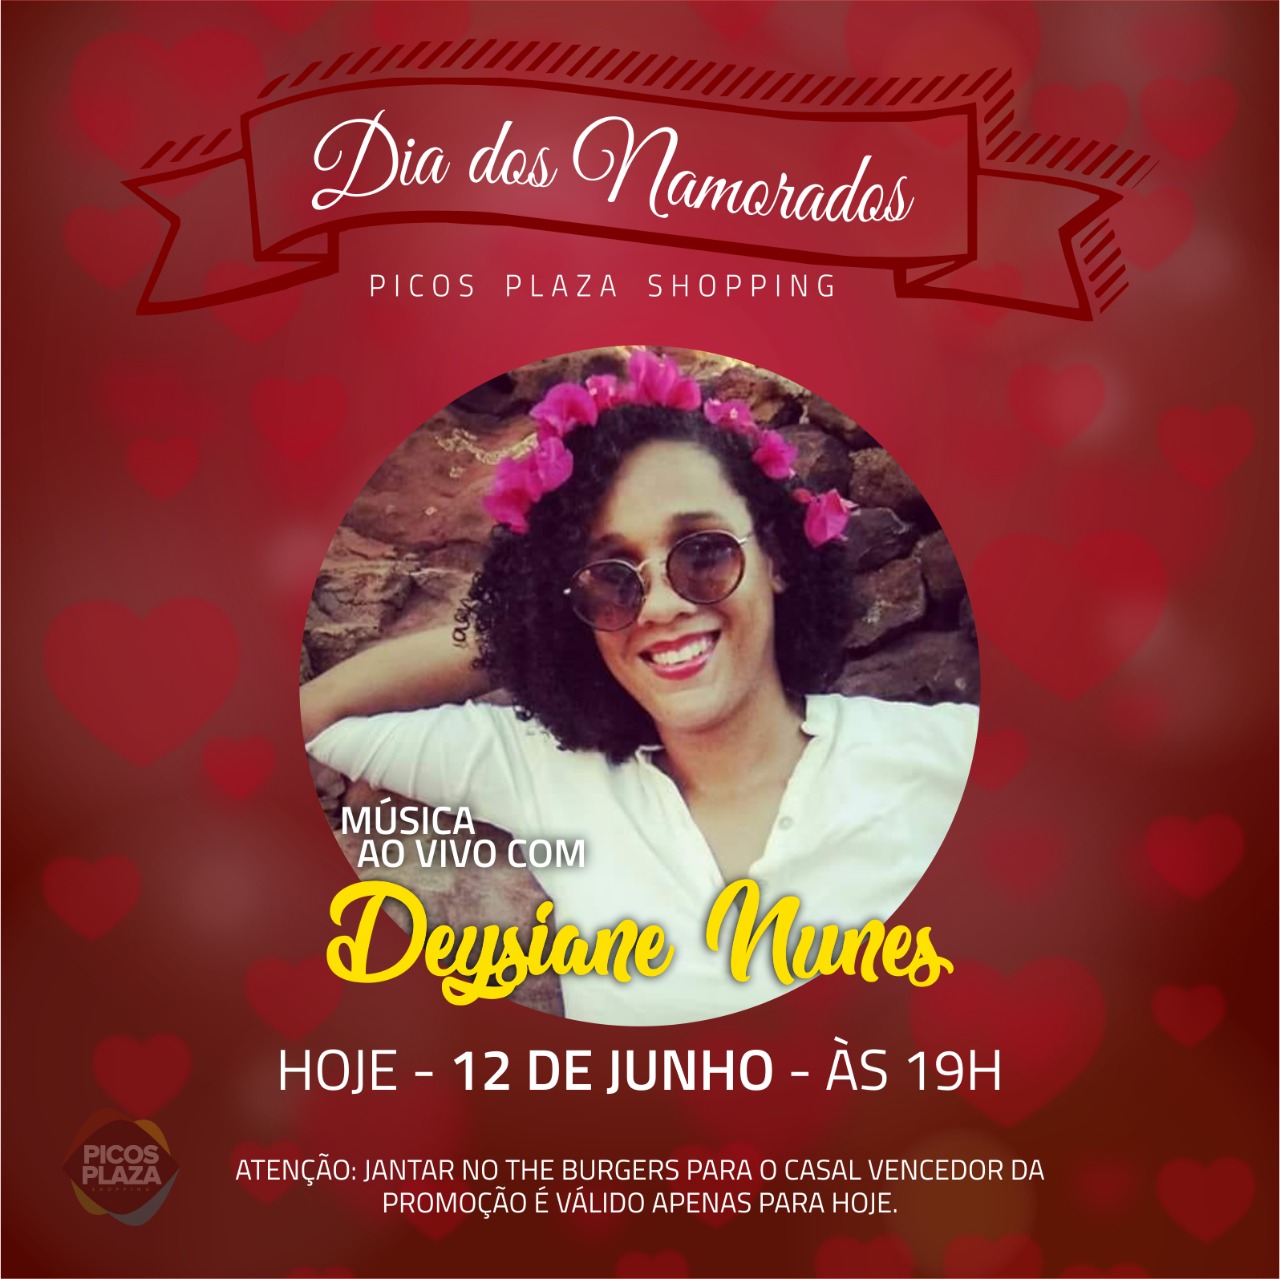 Deysiane Nunes é a atração musical deste Dia dos Namorados no Picos Plaza Shopping